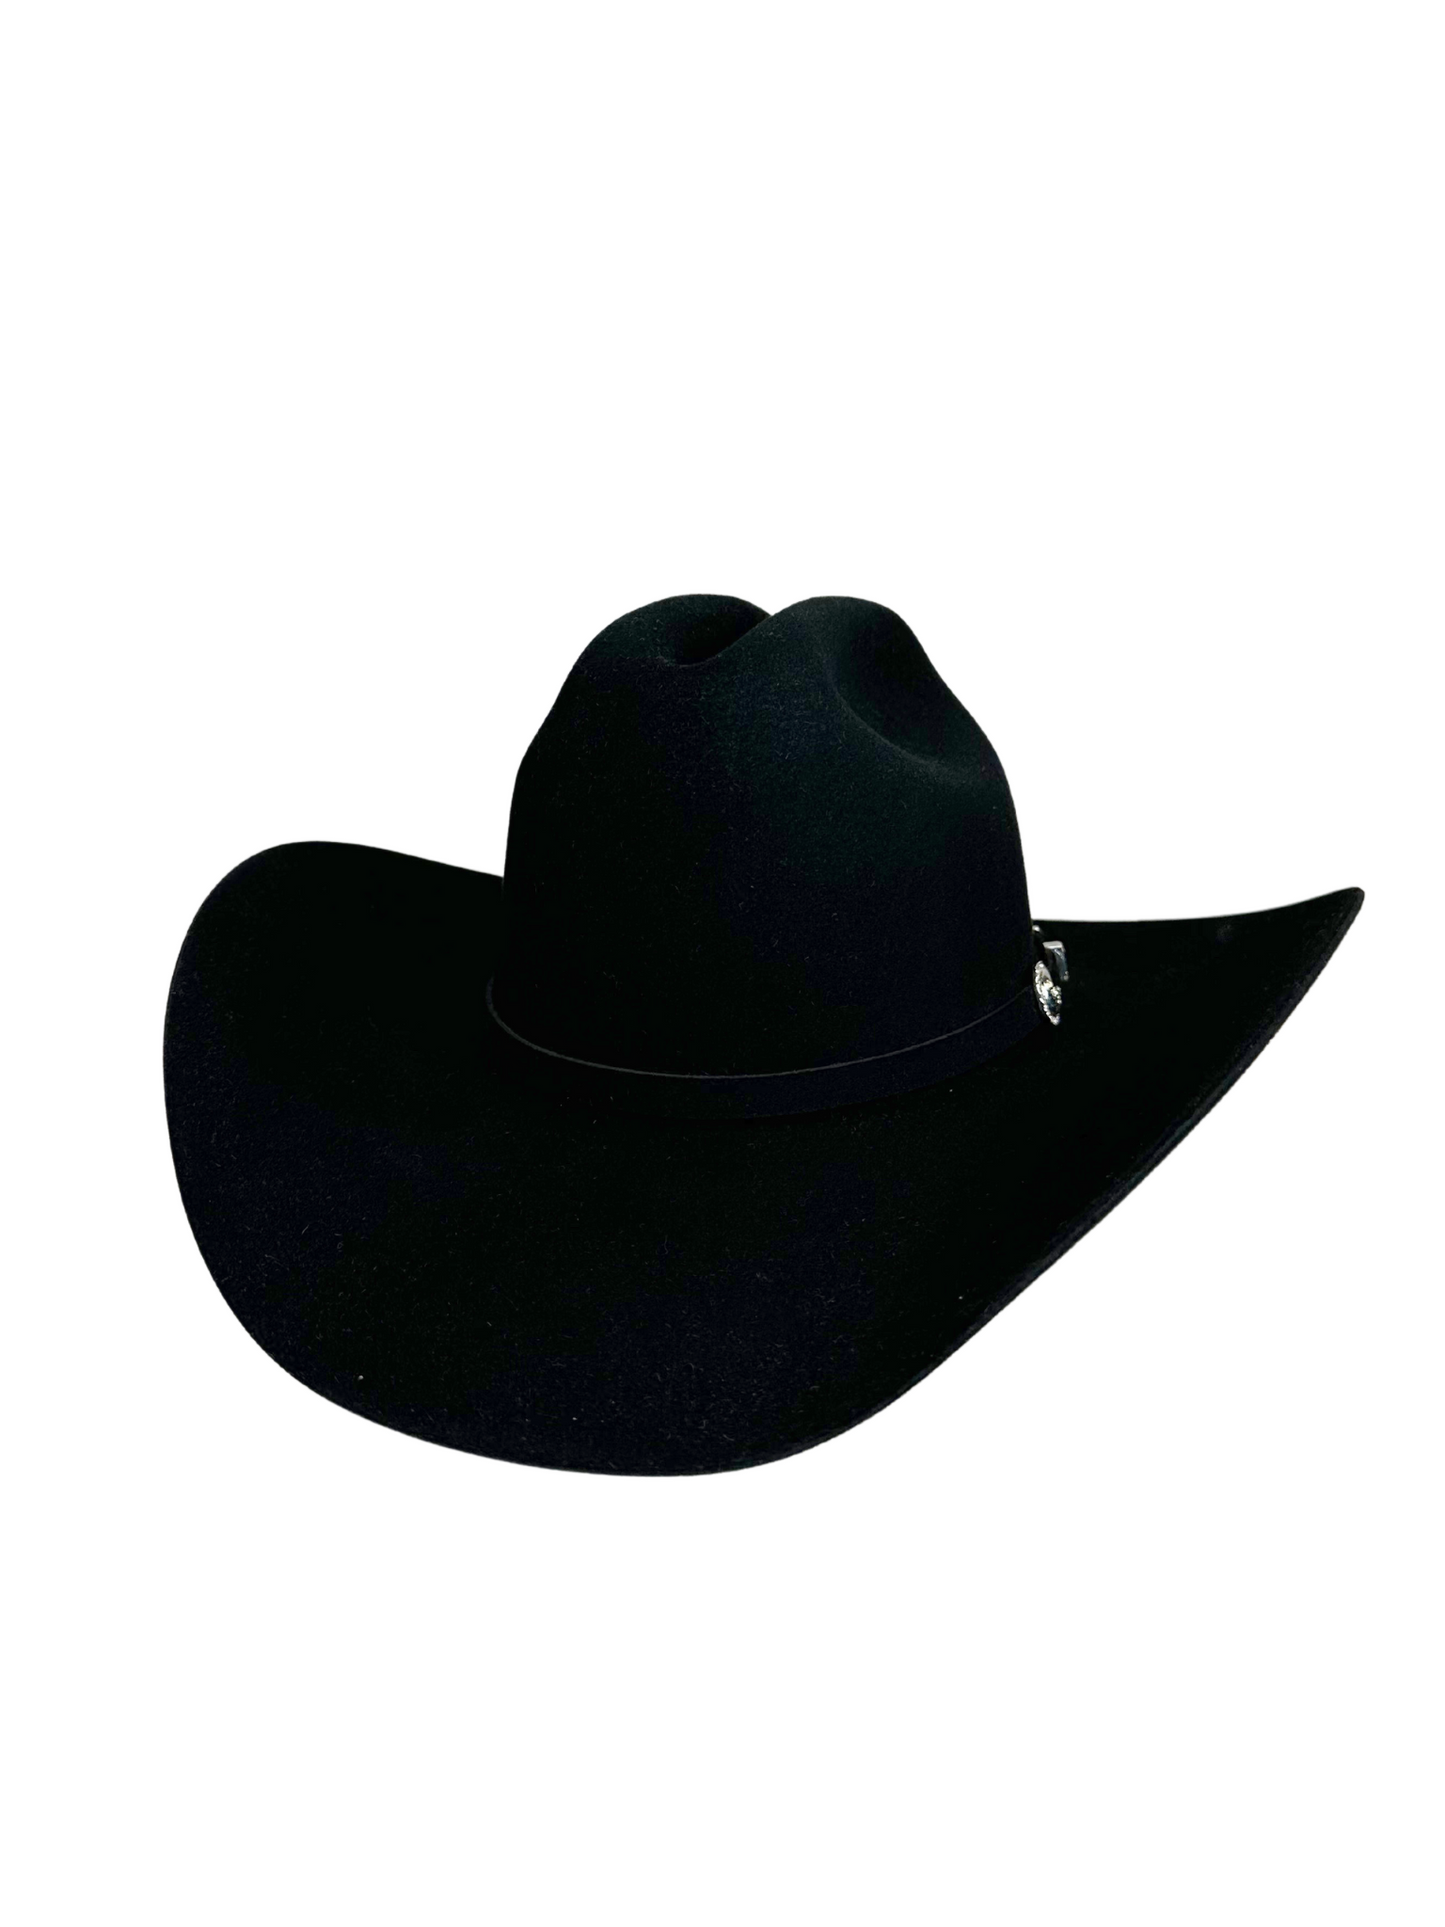 Stetson Shasta 10X Premier Cowboy Hat - Black